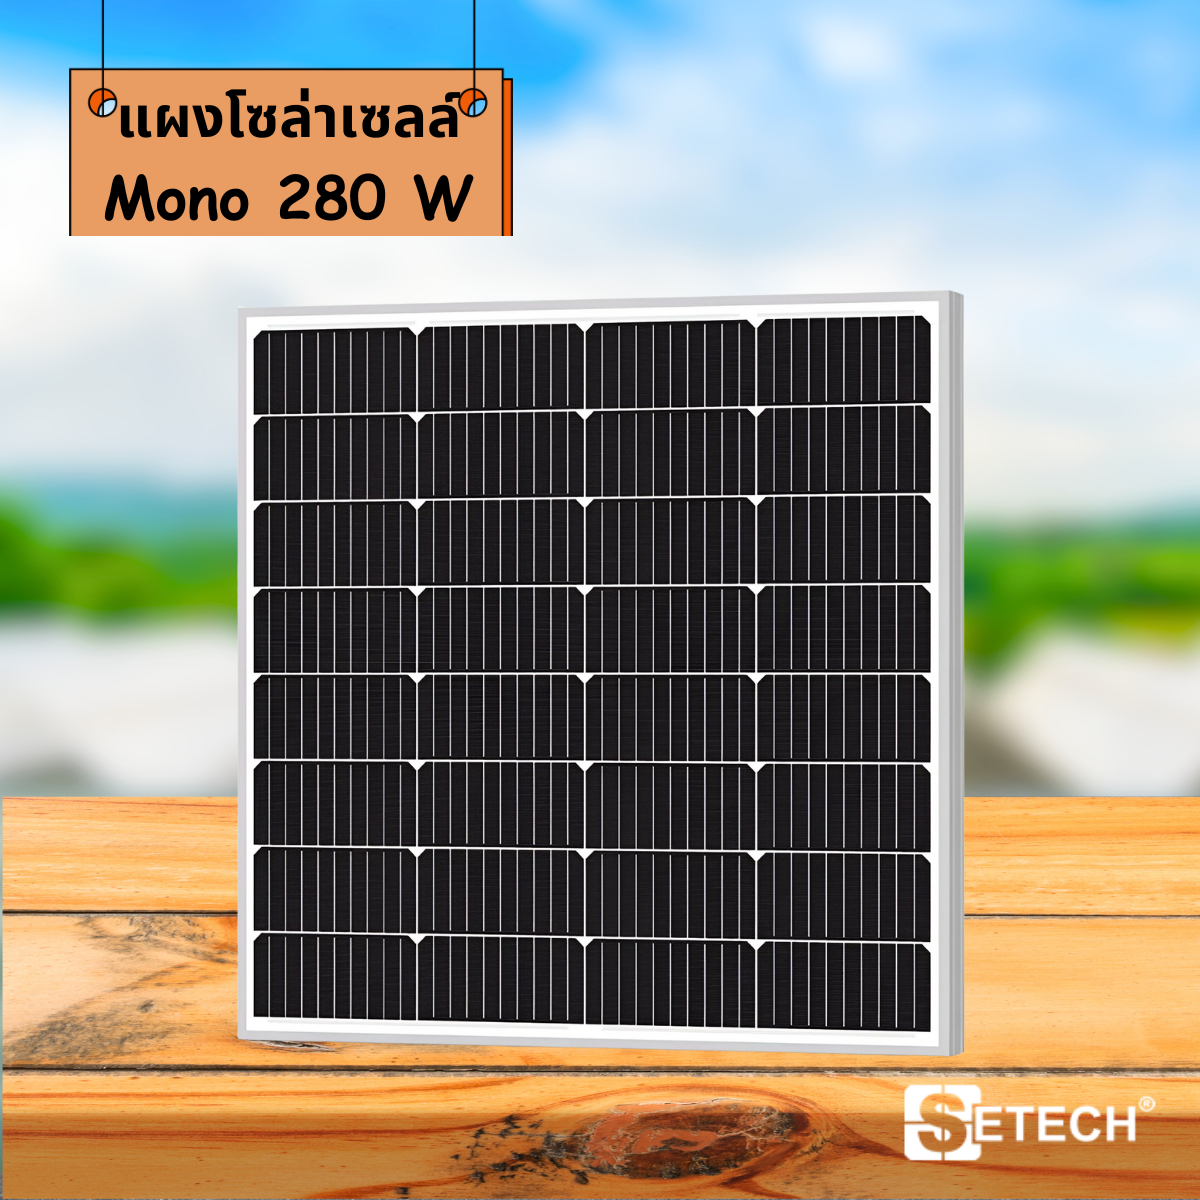 Solar panels Model Mono 280 W SETECH-SC-02 SC-02